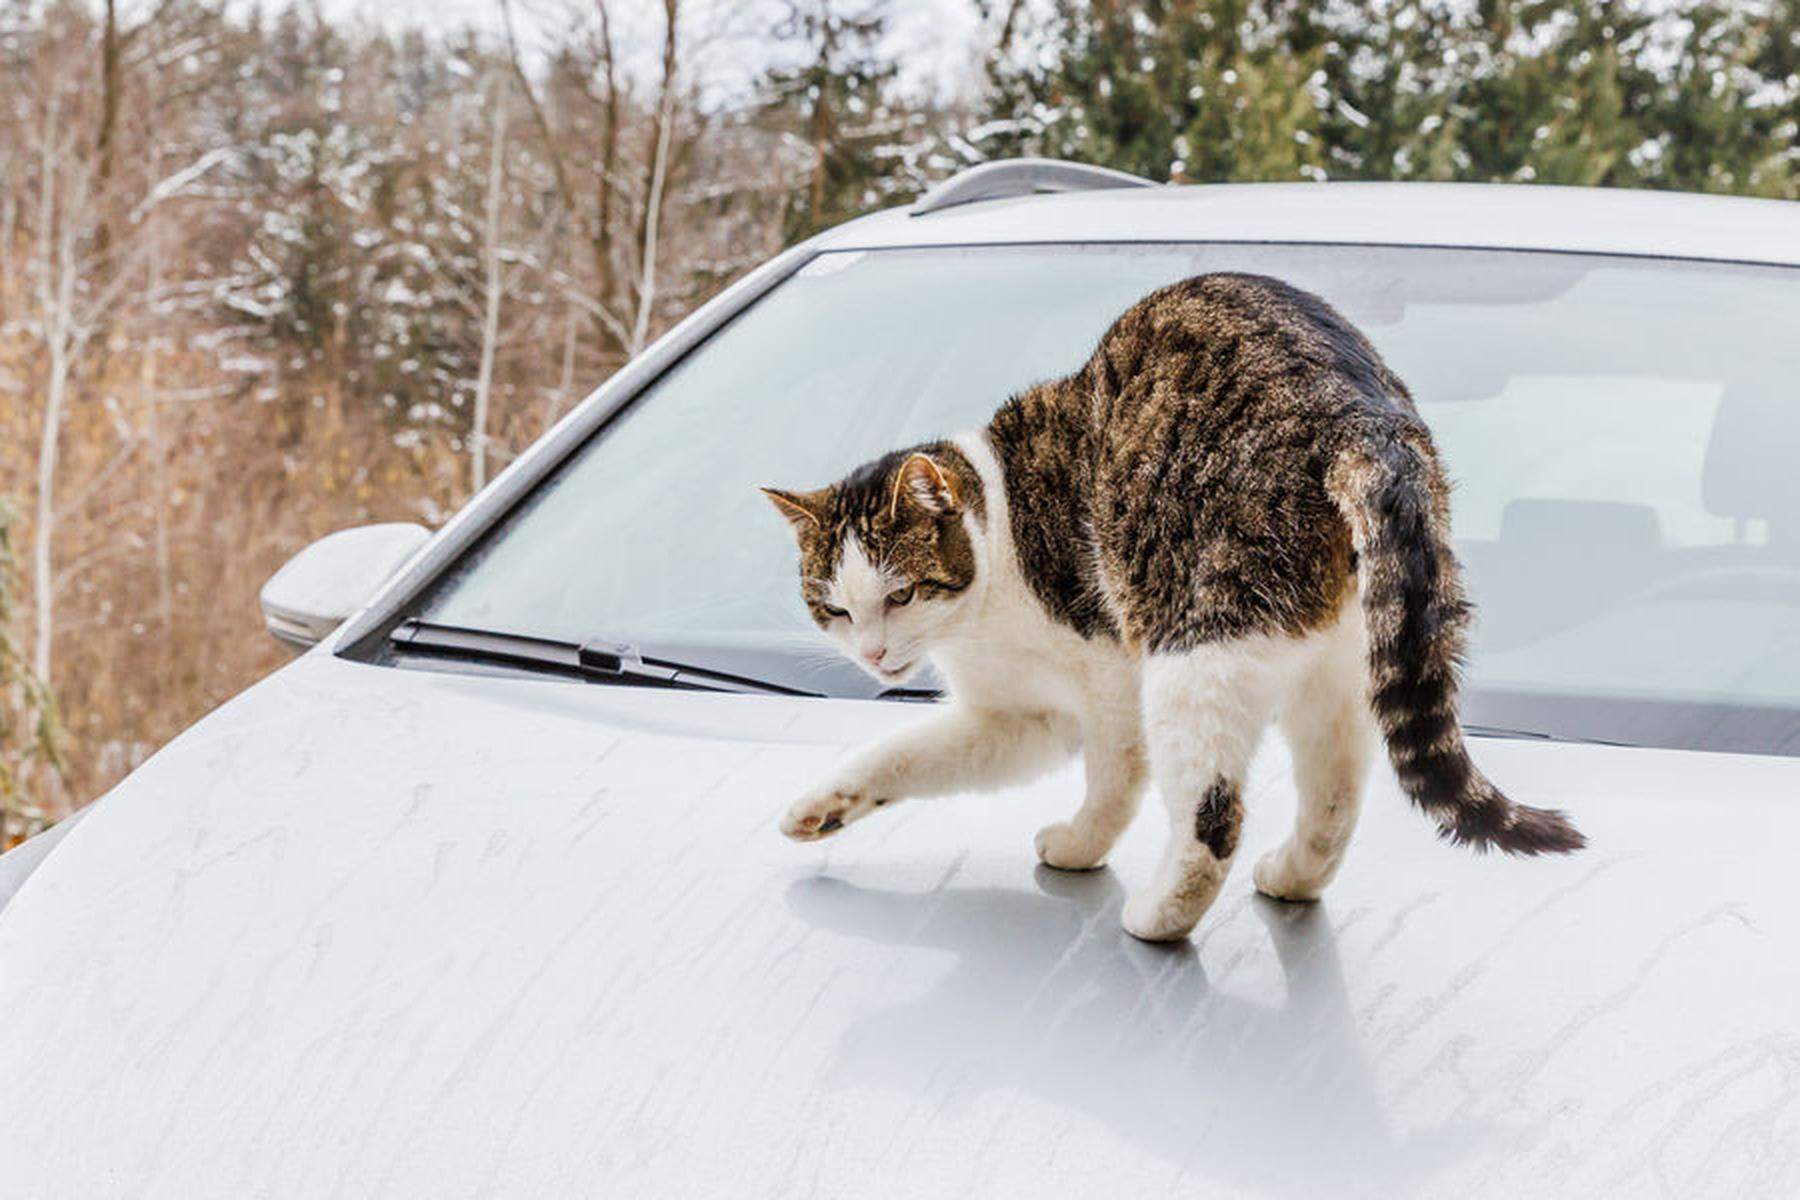 Kratzer im Lack  Katze legte sich auf Auto: Kärntner klagte Tierbesitzerin